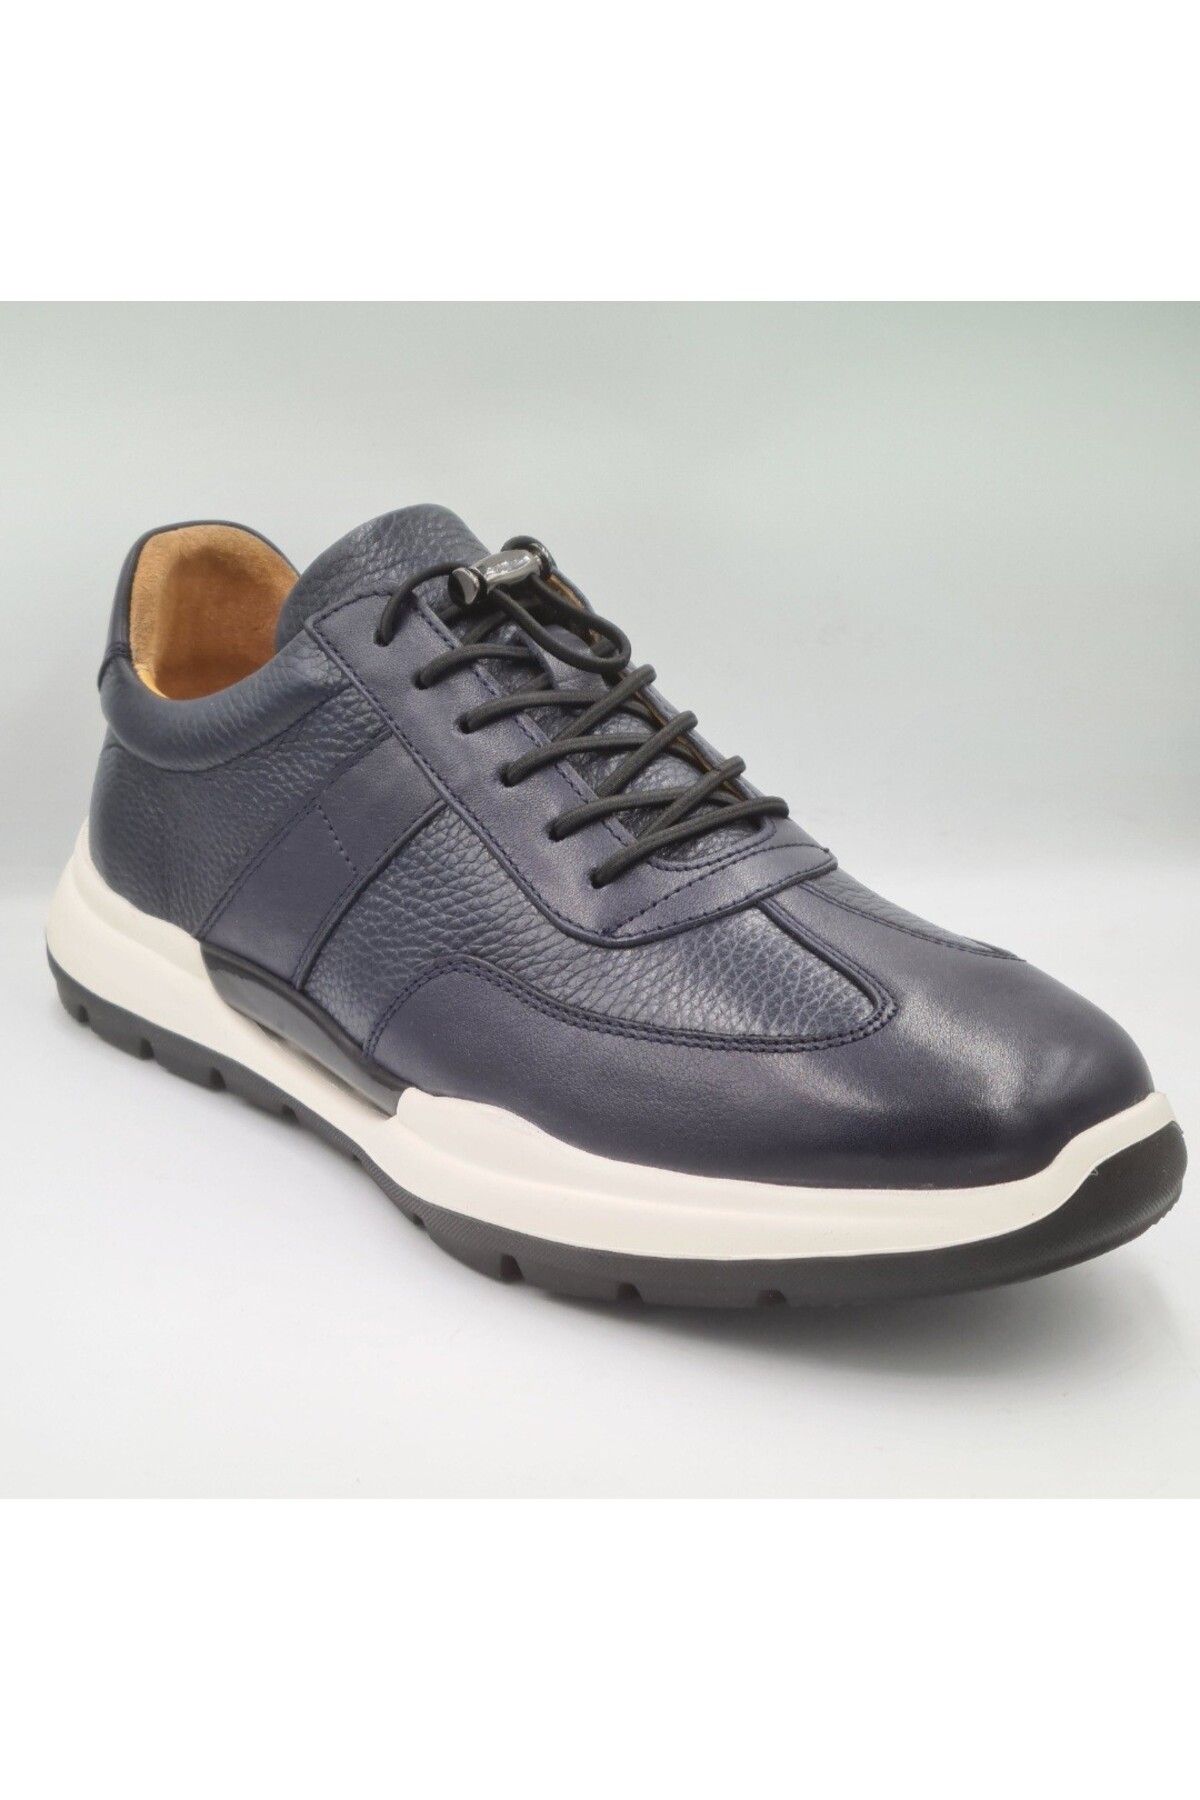 Libero 5223 Lacivert Hakiki Deri Eva Taban Slip-On Bağcıklı Erkek Günlük Casual Sneaker Ayakkabı